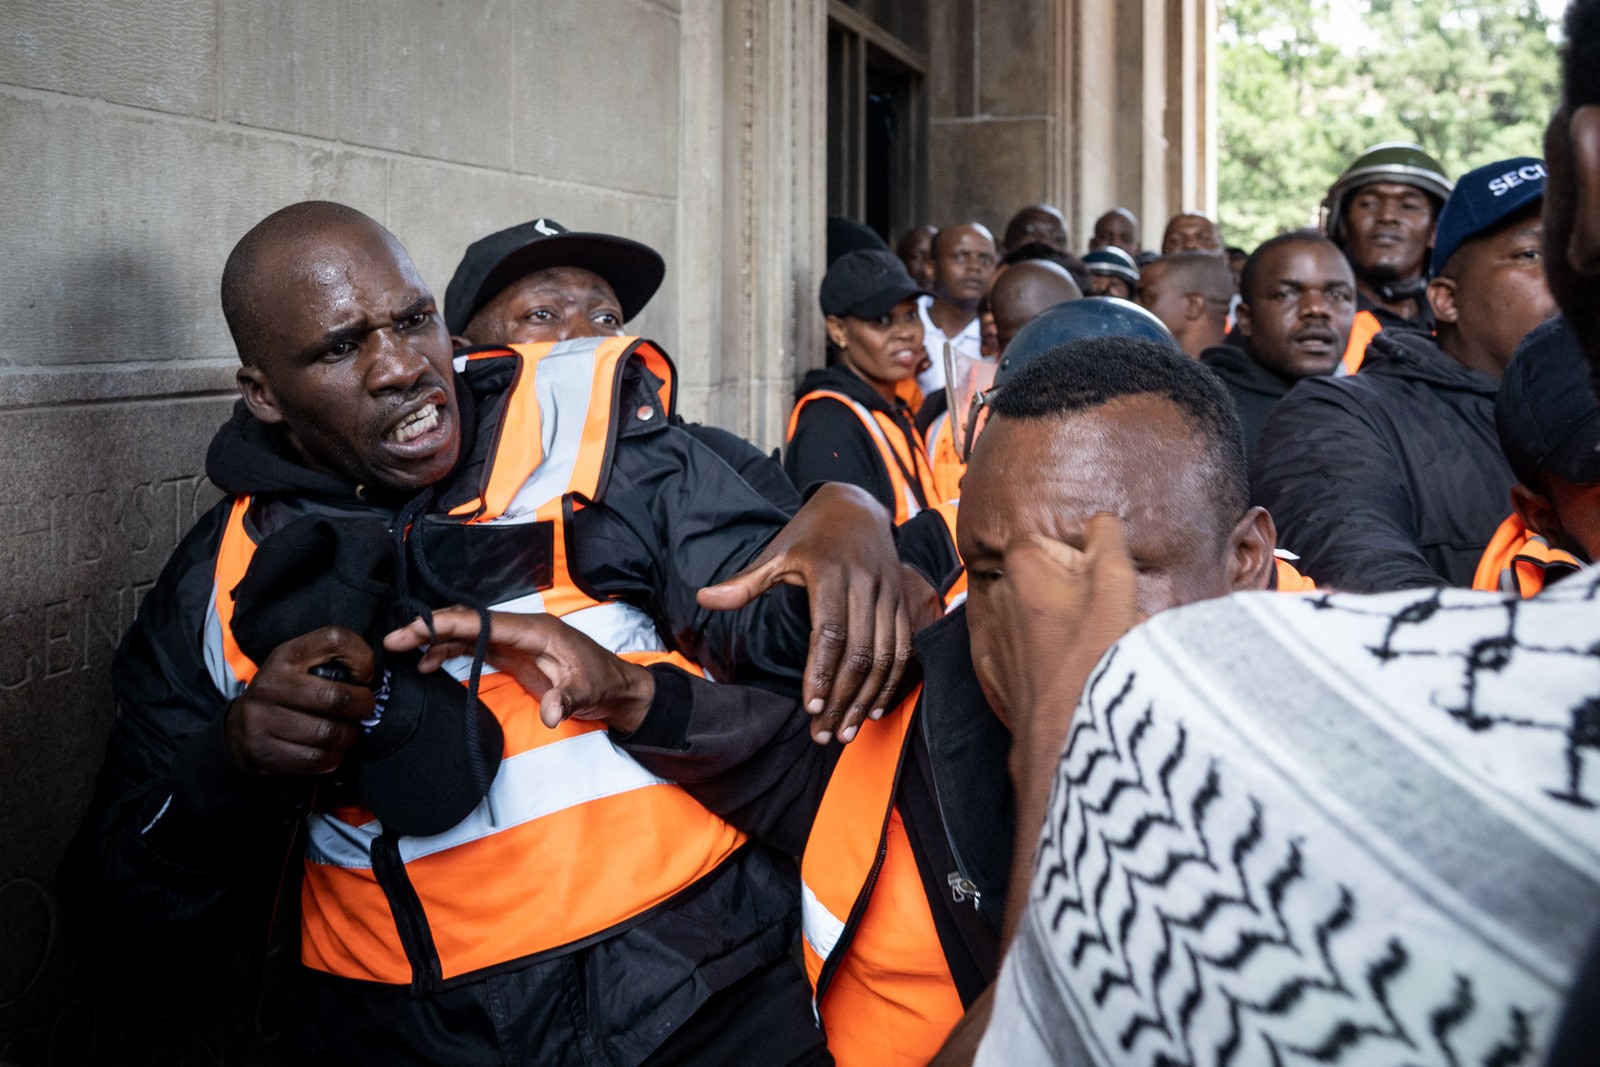 Estudantes entram em conflito durante protesto na Universidade de Witwatersrand (WITS) em Joanesburgo. Categoria cobra apoio aos desalojados — Foto: AFP